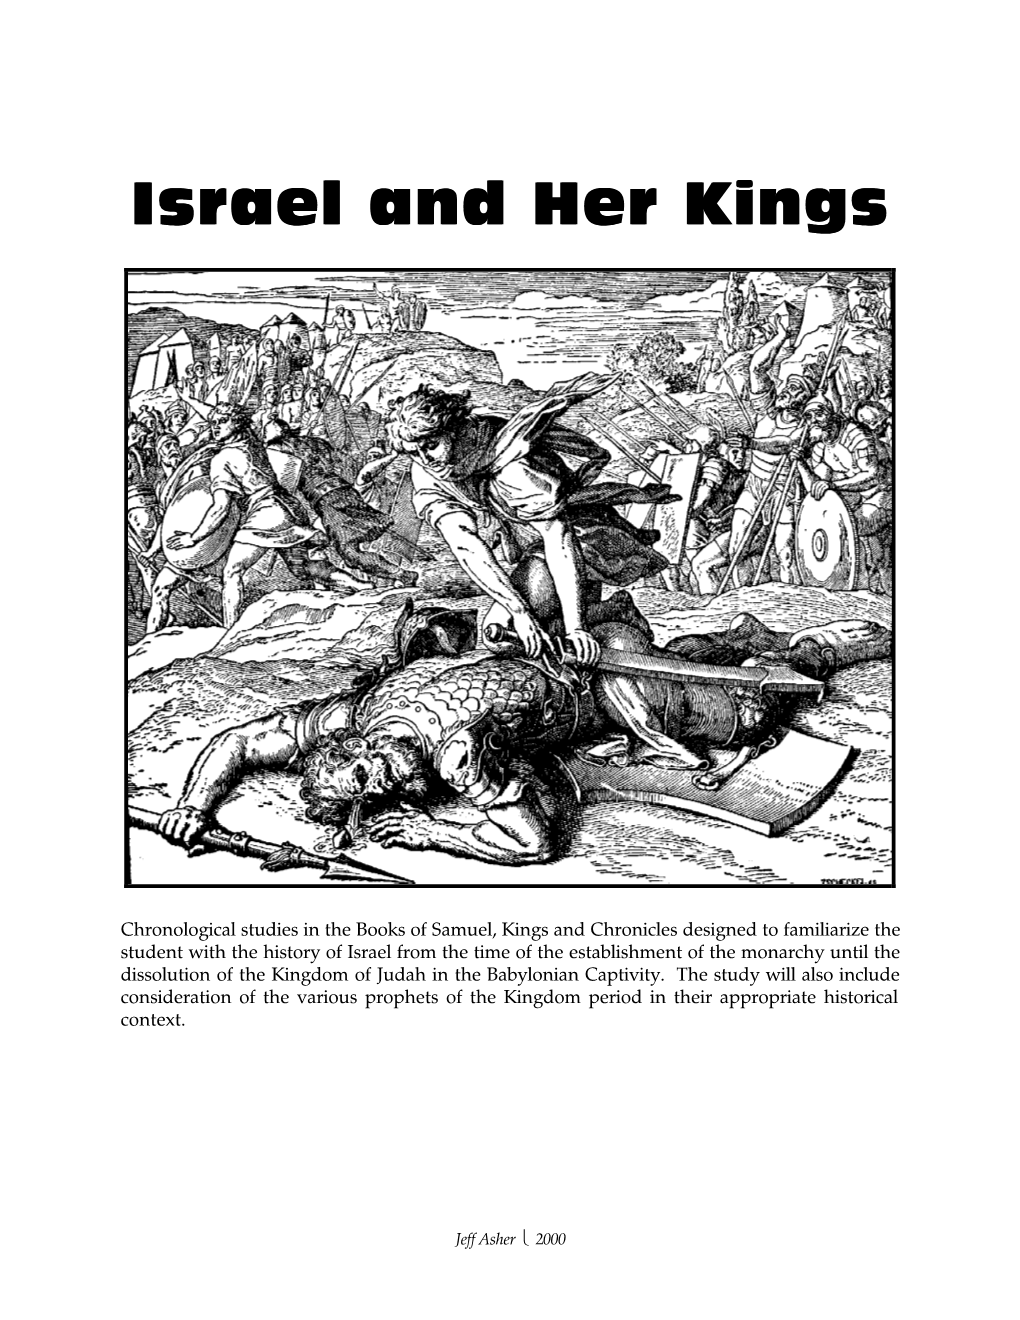 Israel & Her Kings